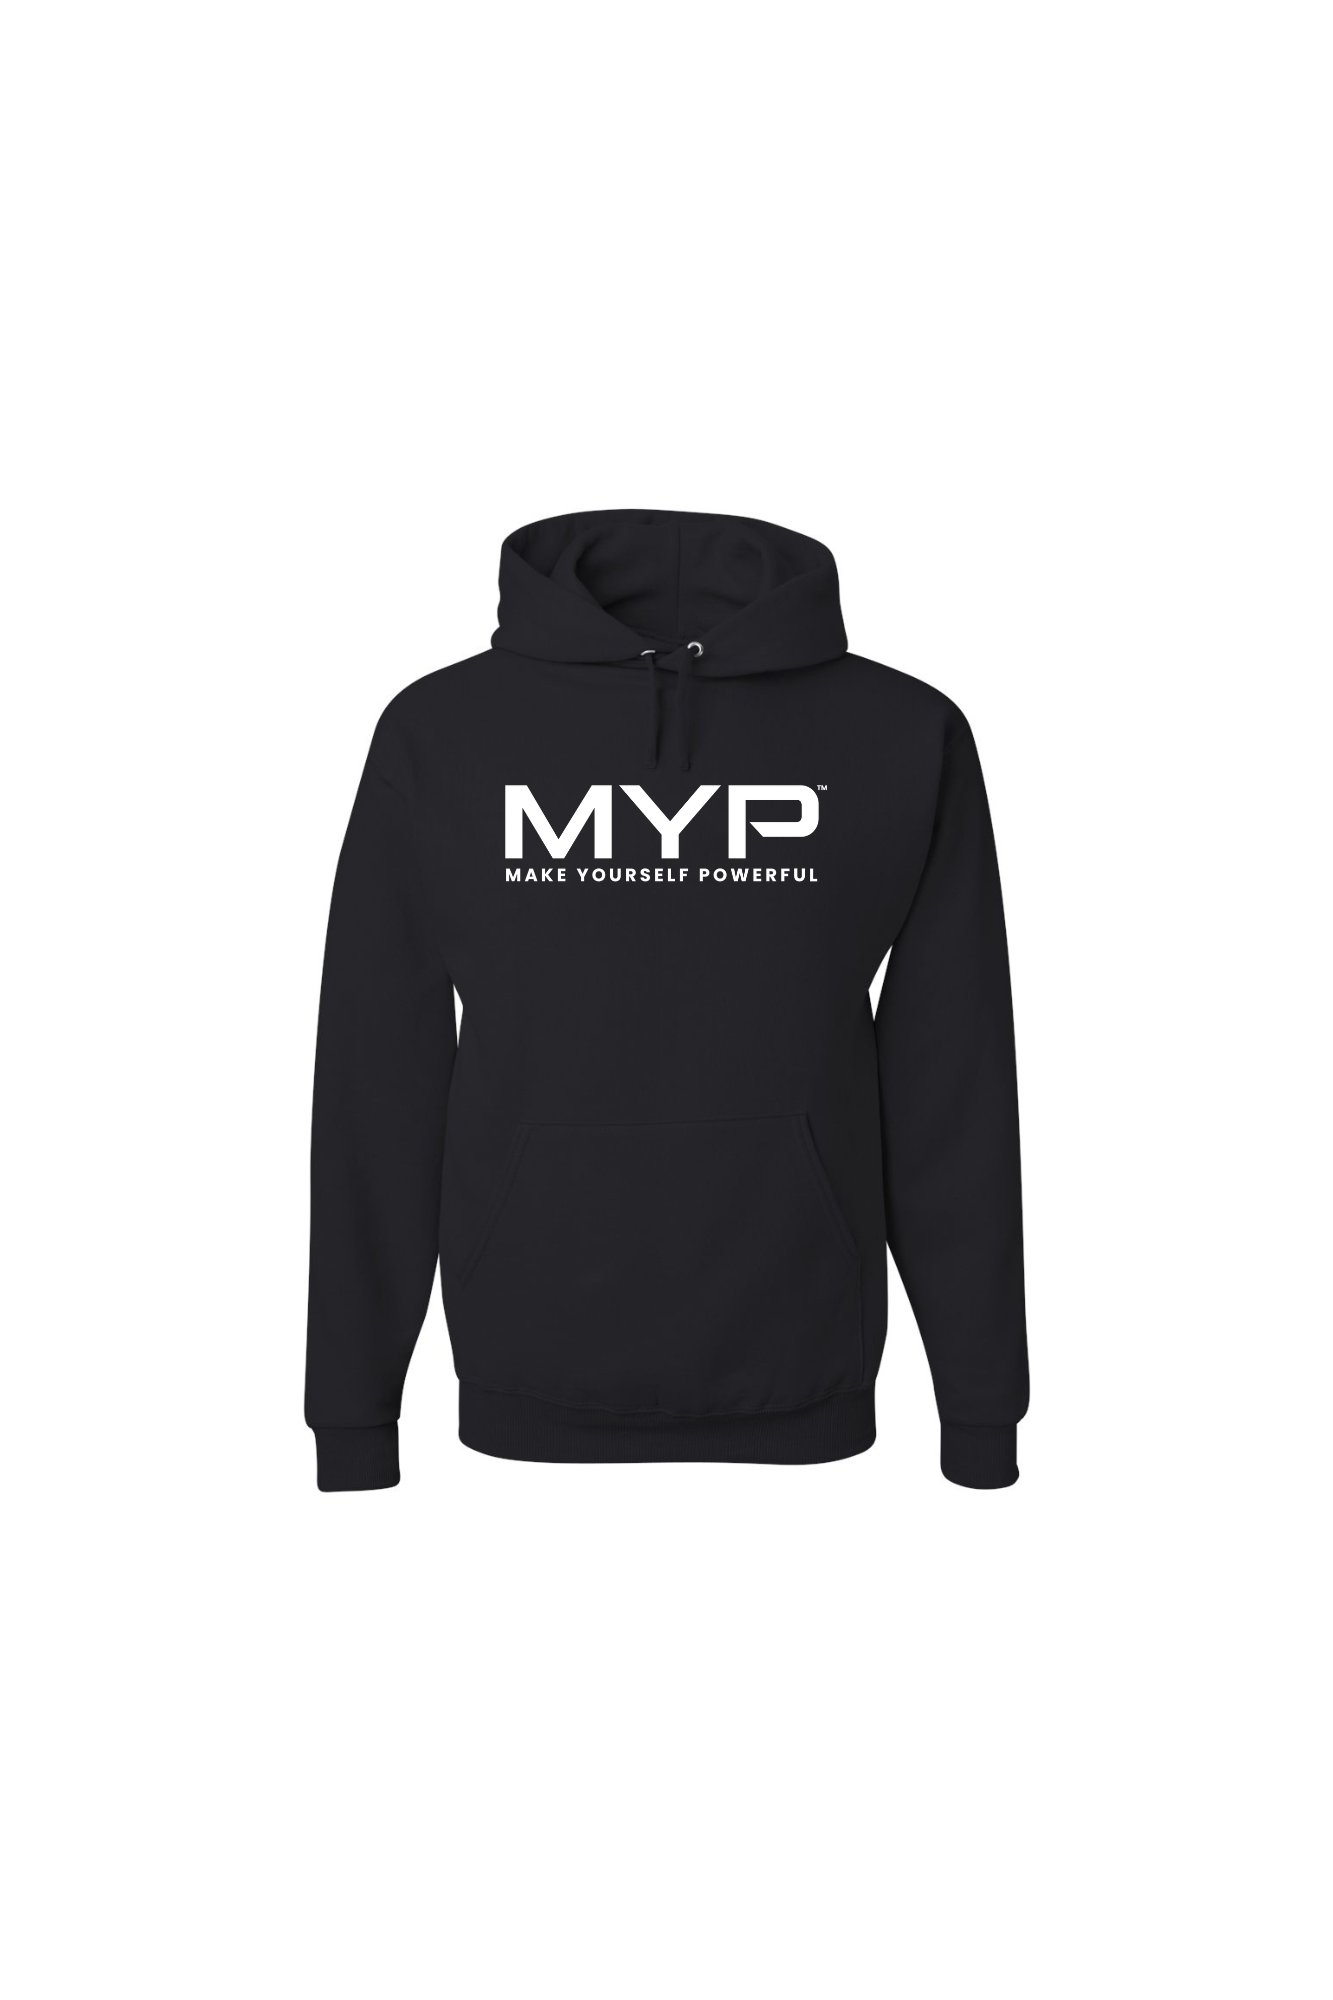 MYO Black Pullover Hoodie and MYO Sweatpants - The Metropolitan